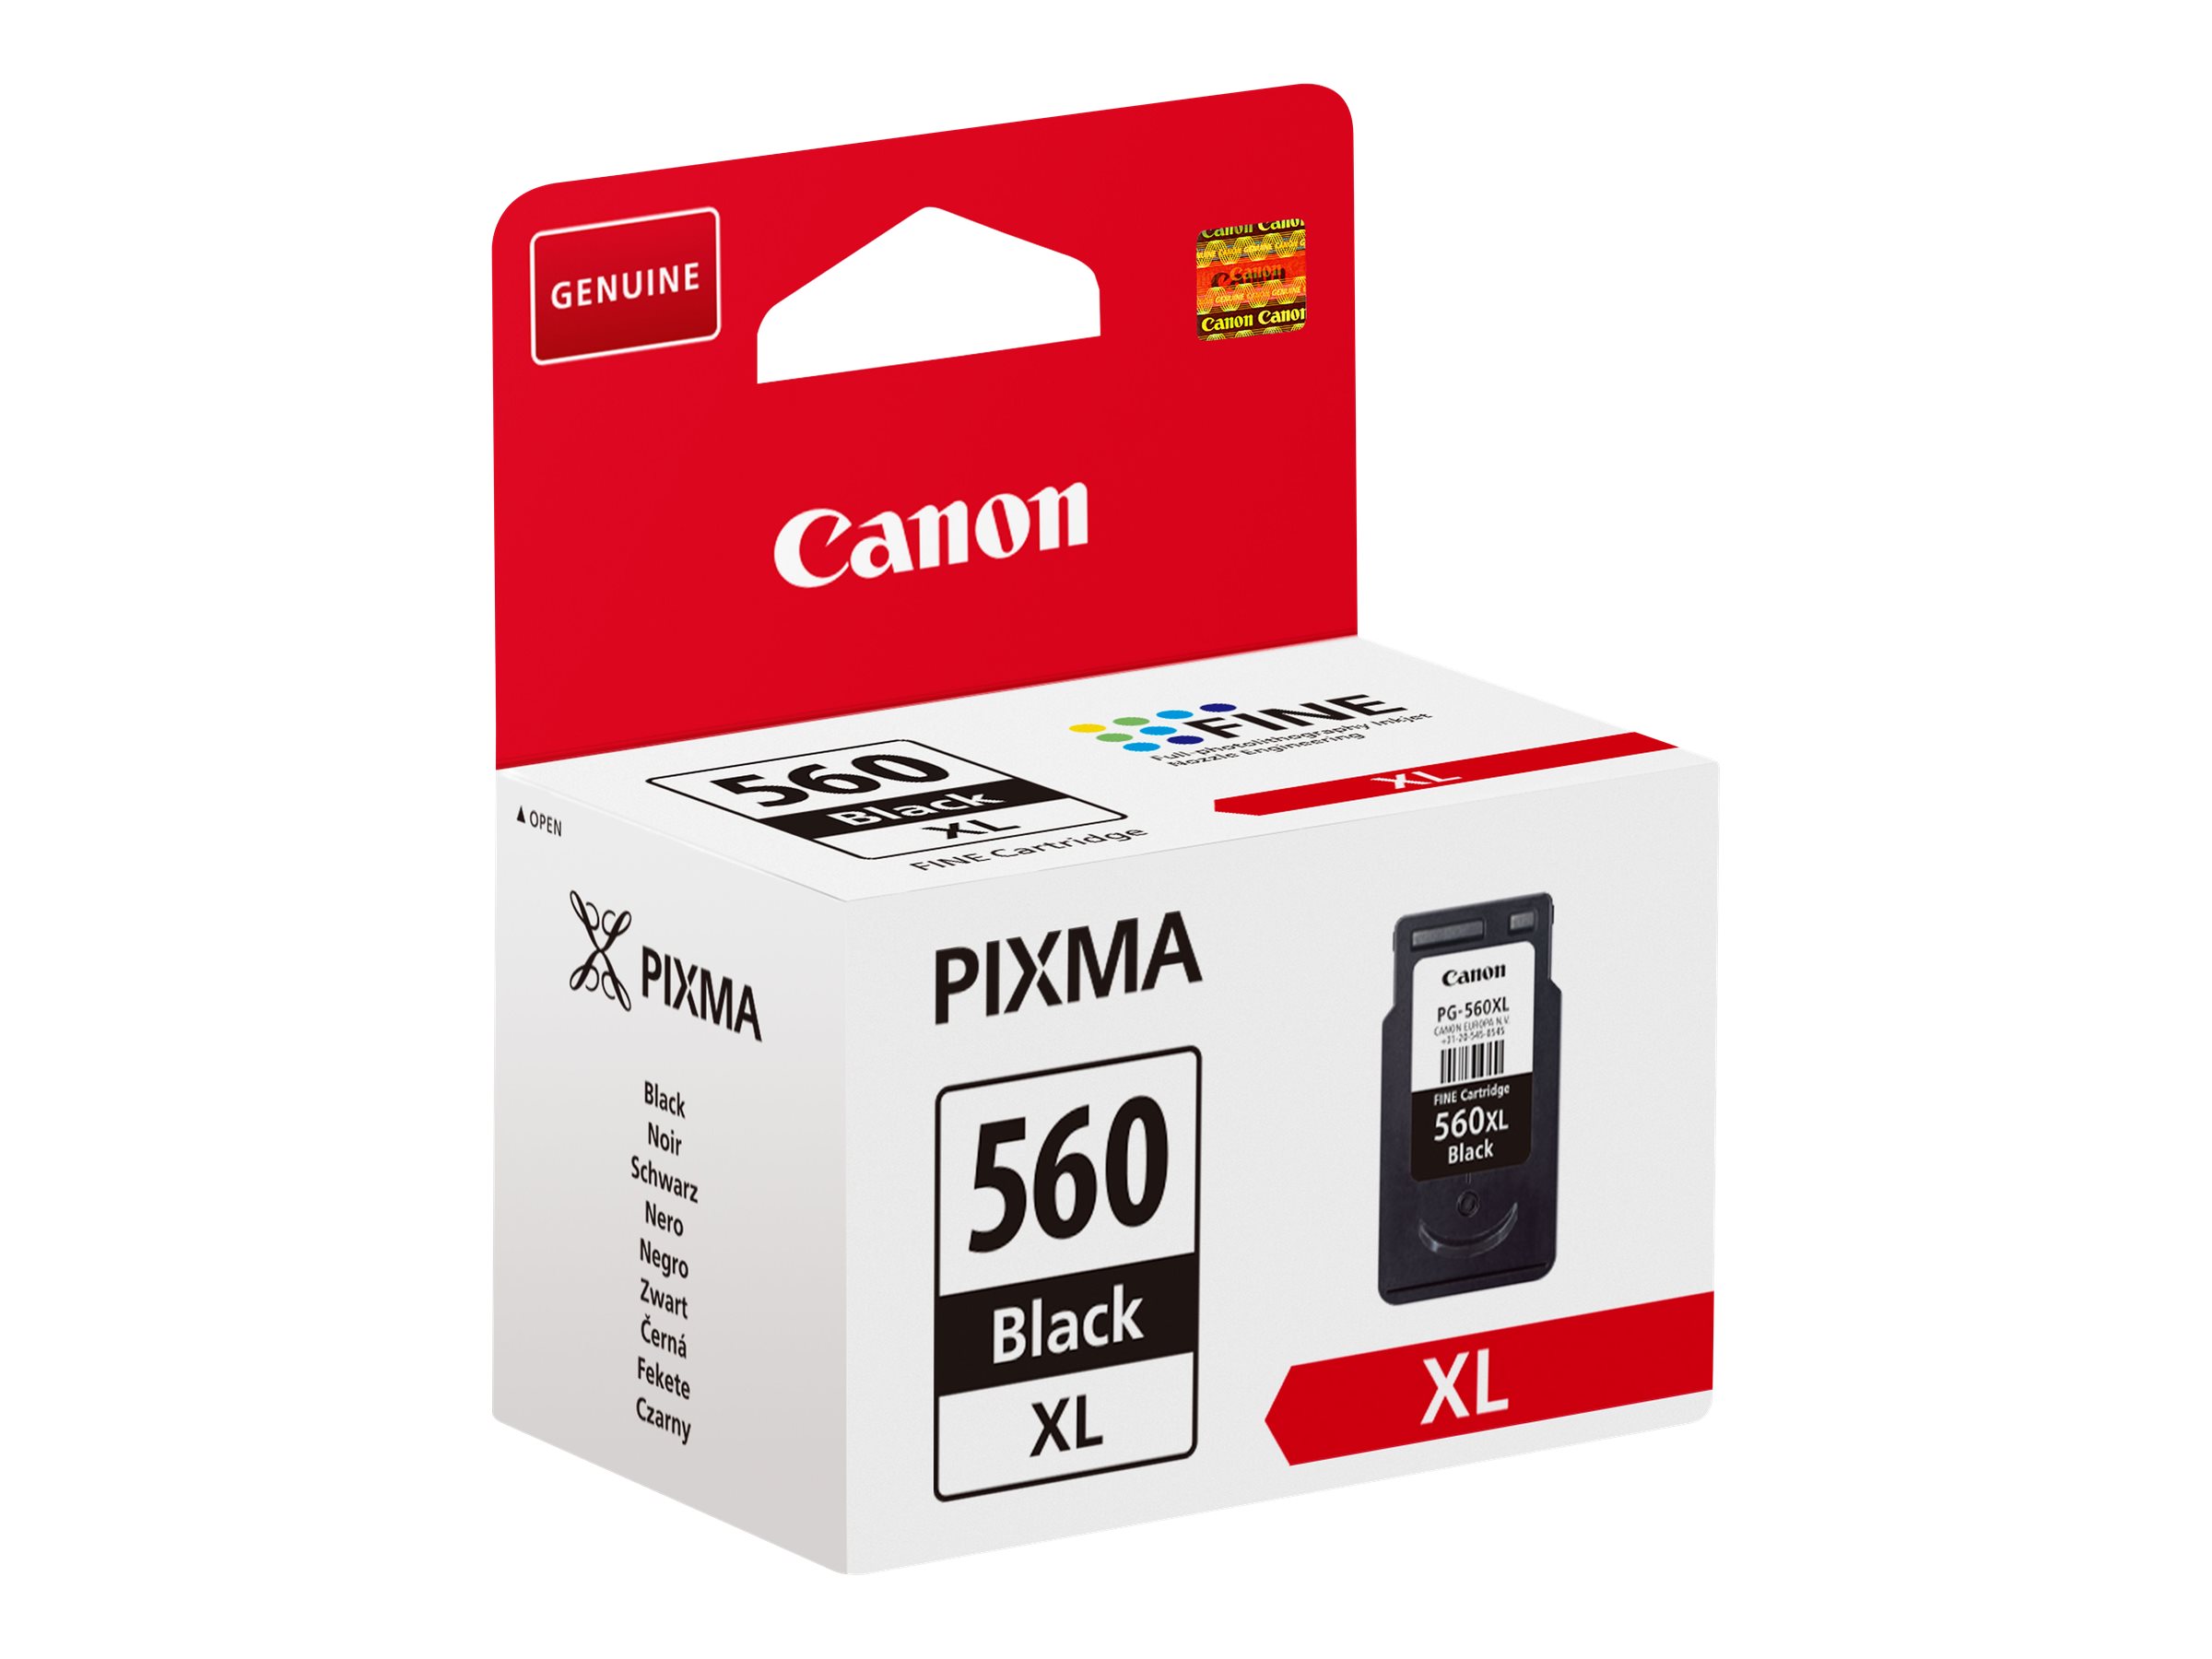 Canon PG-560XL - Noir - original - cartouche d'encre - pour PIXMA TS5350, TS5351, TS5352, TS5353, TS7450, TS7451 - 3712C001 - Cartouches d'encre Canon